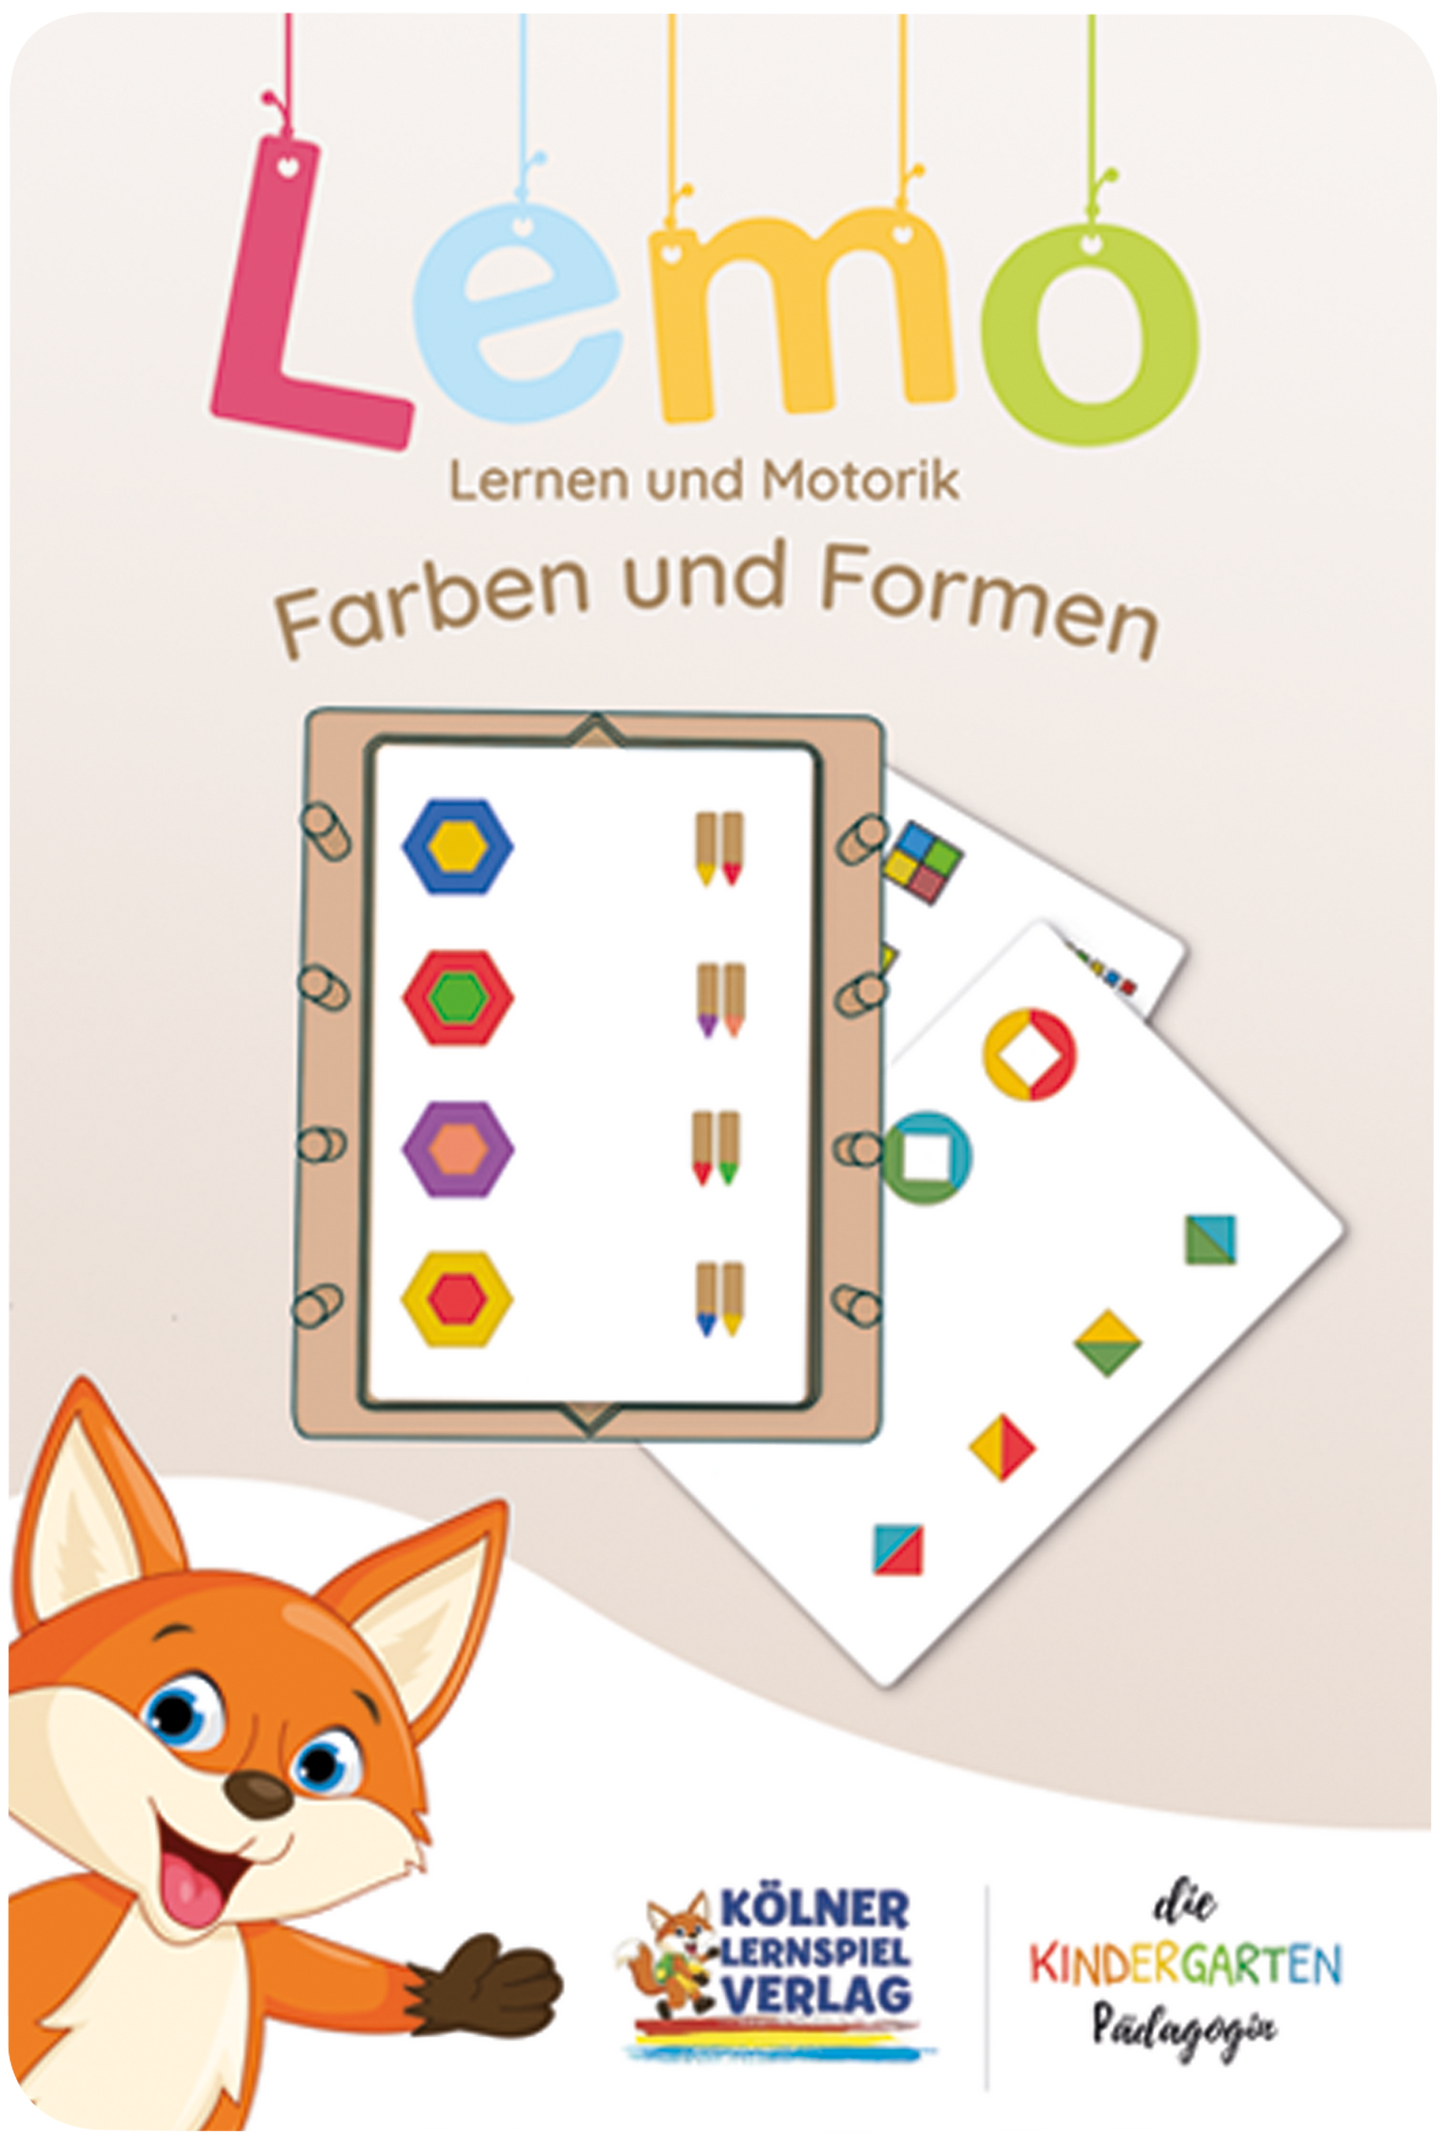 Lemo Kartensatz Farben und Formen (ab 3 Jahren)